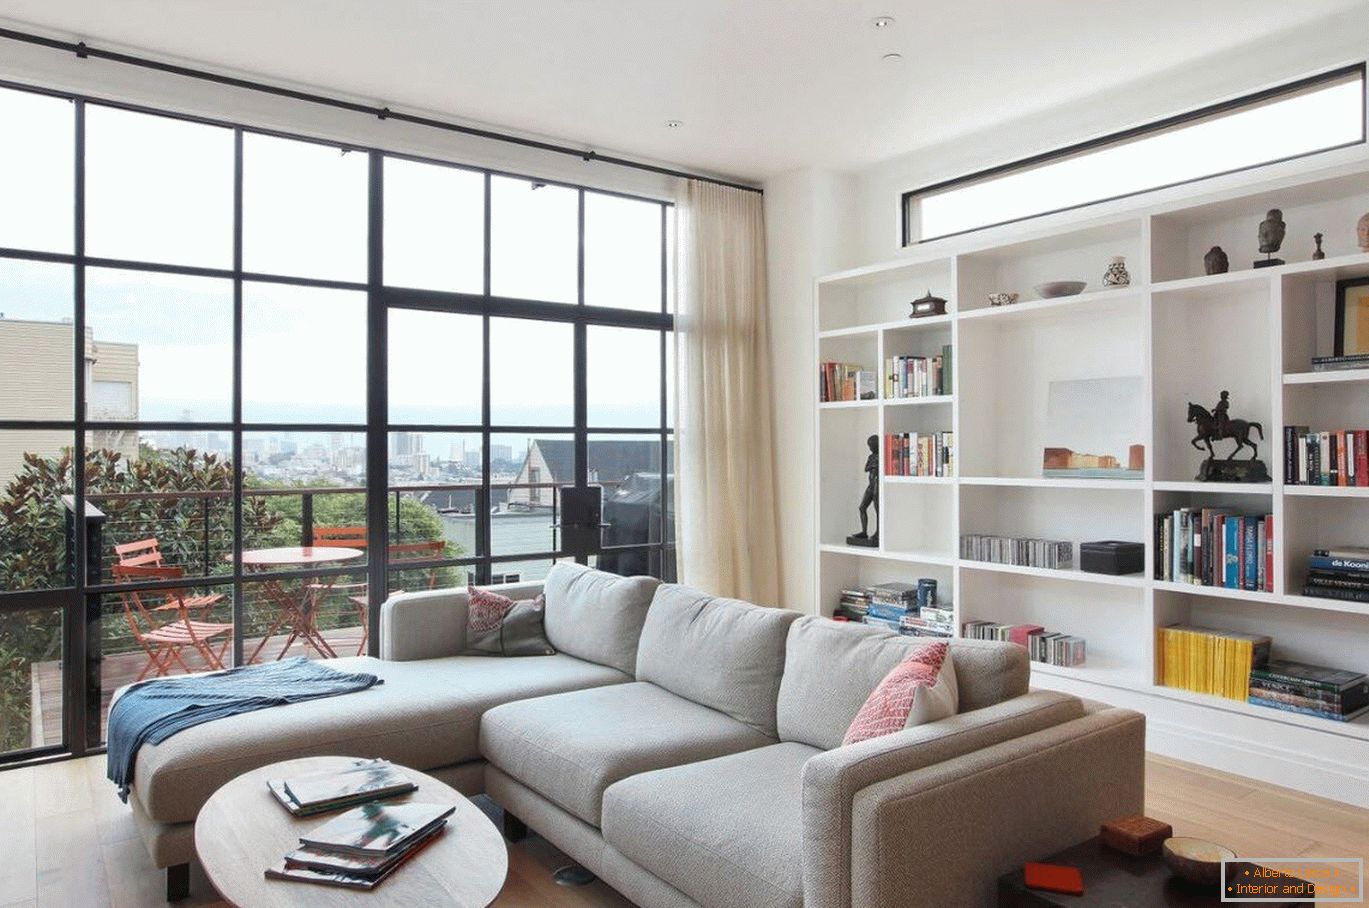 Panoramaverglasung in modernen Wohnungen